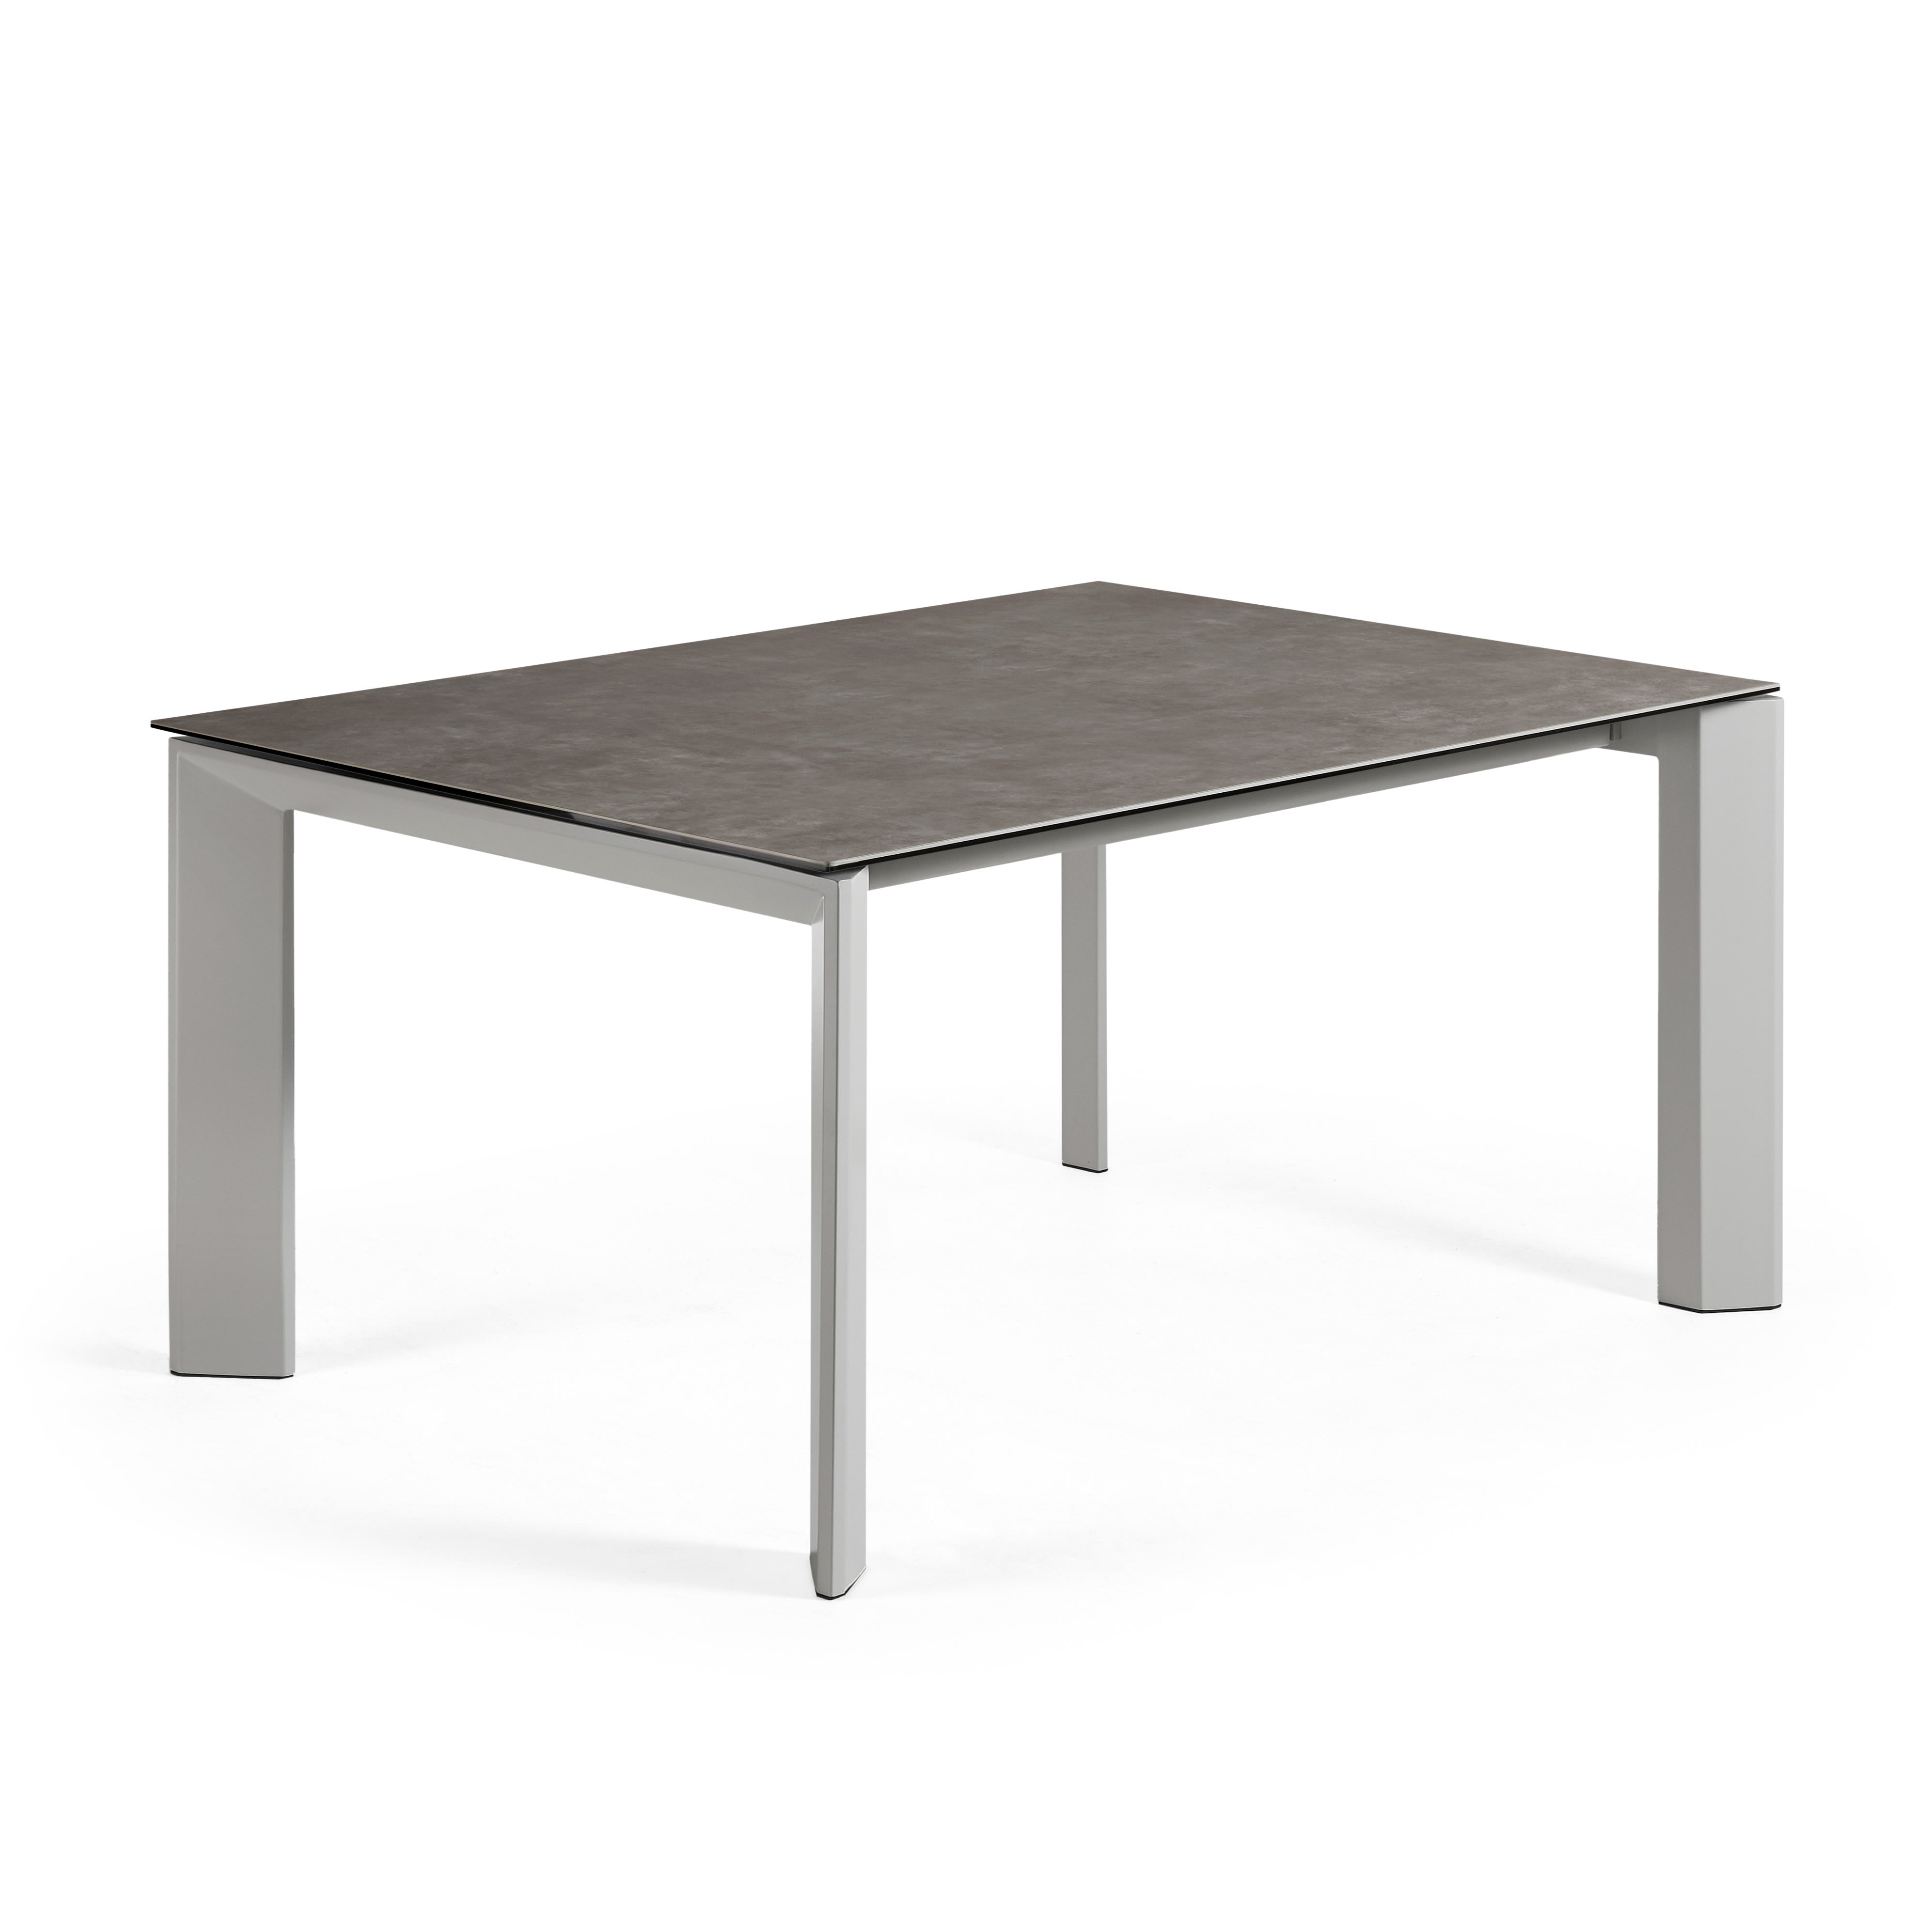 Axis kihúzható kerámia asztal Vulcano Ceniza befejezéssel és szürke acél lábakkal 160 (220) cm